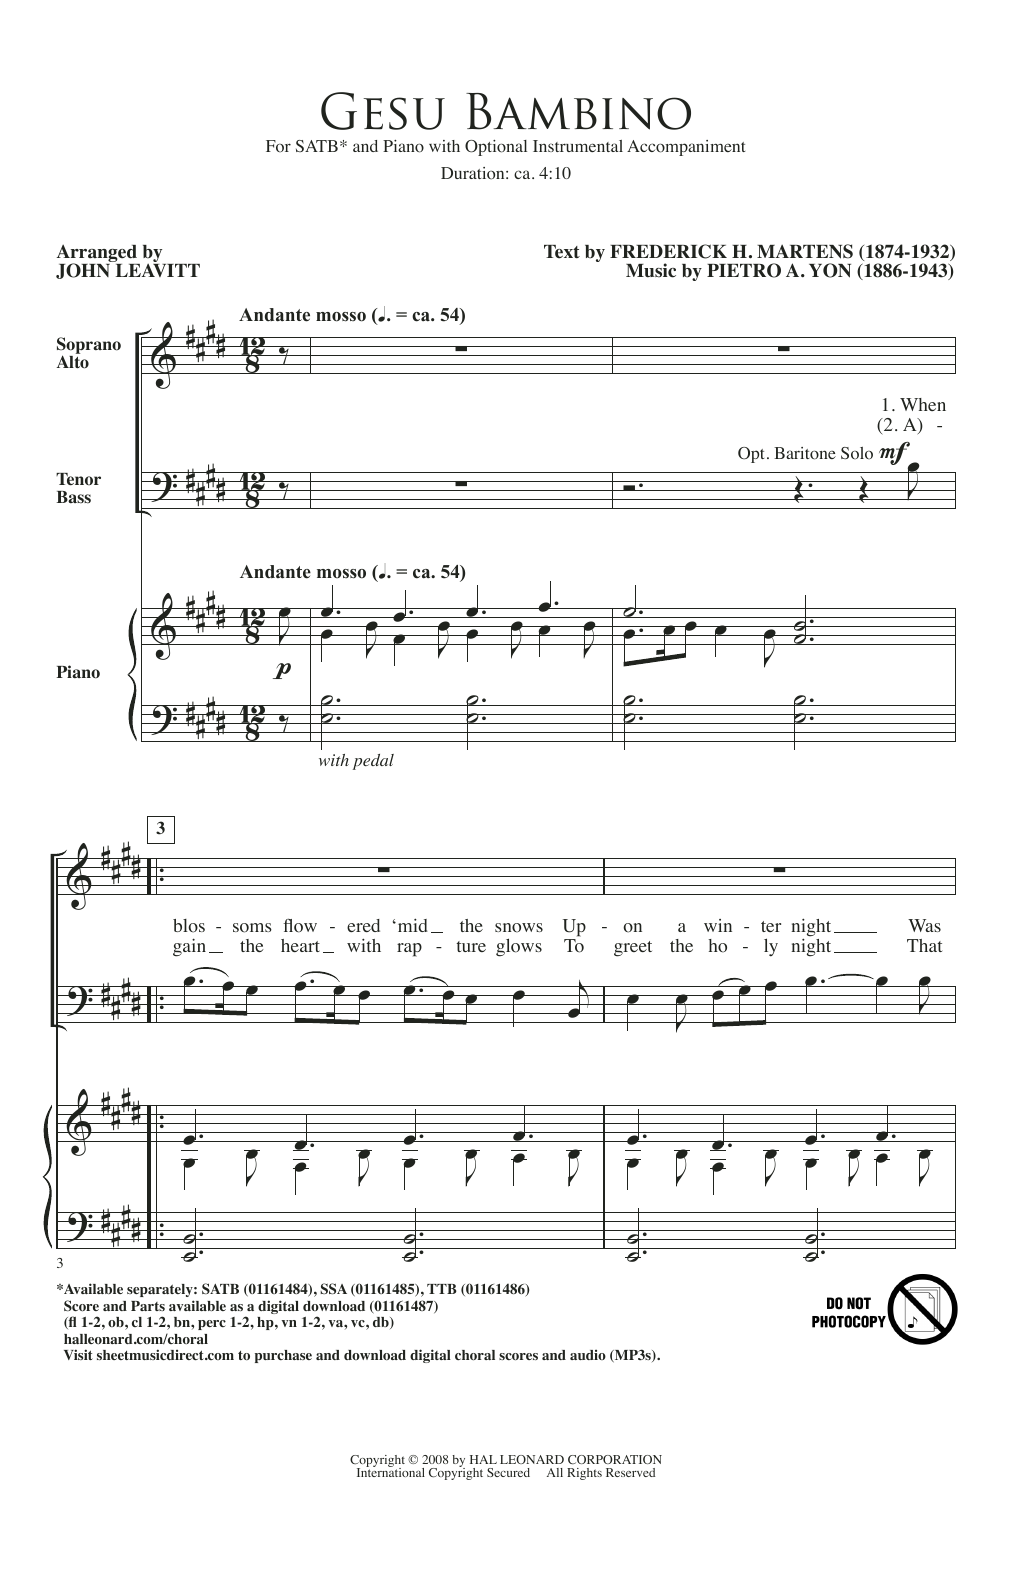 Ges Bambino (arr. John Leavitt) (SATB Choir) von Pietro A. Yon